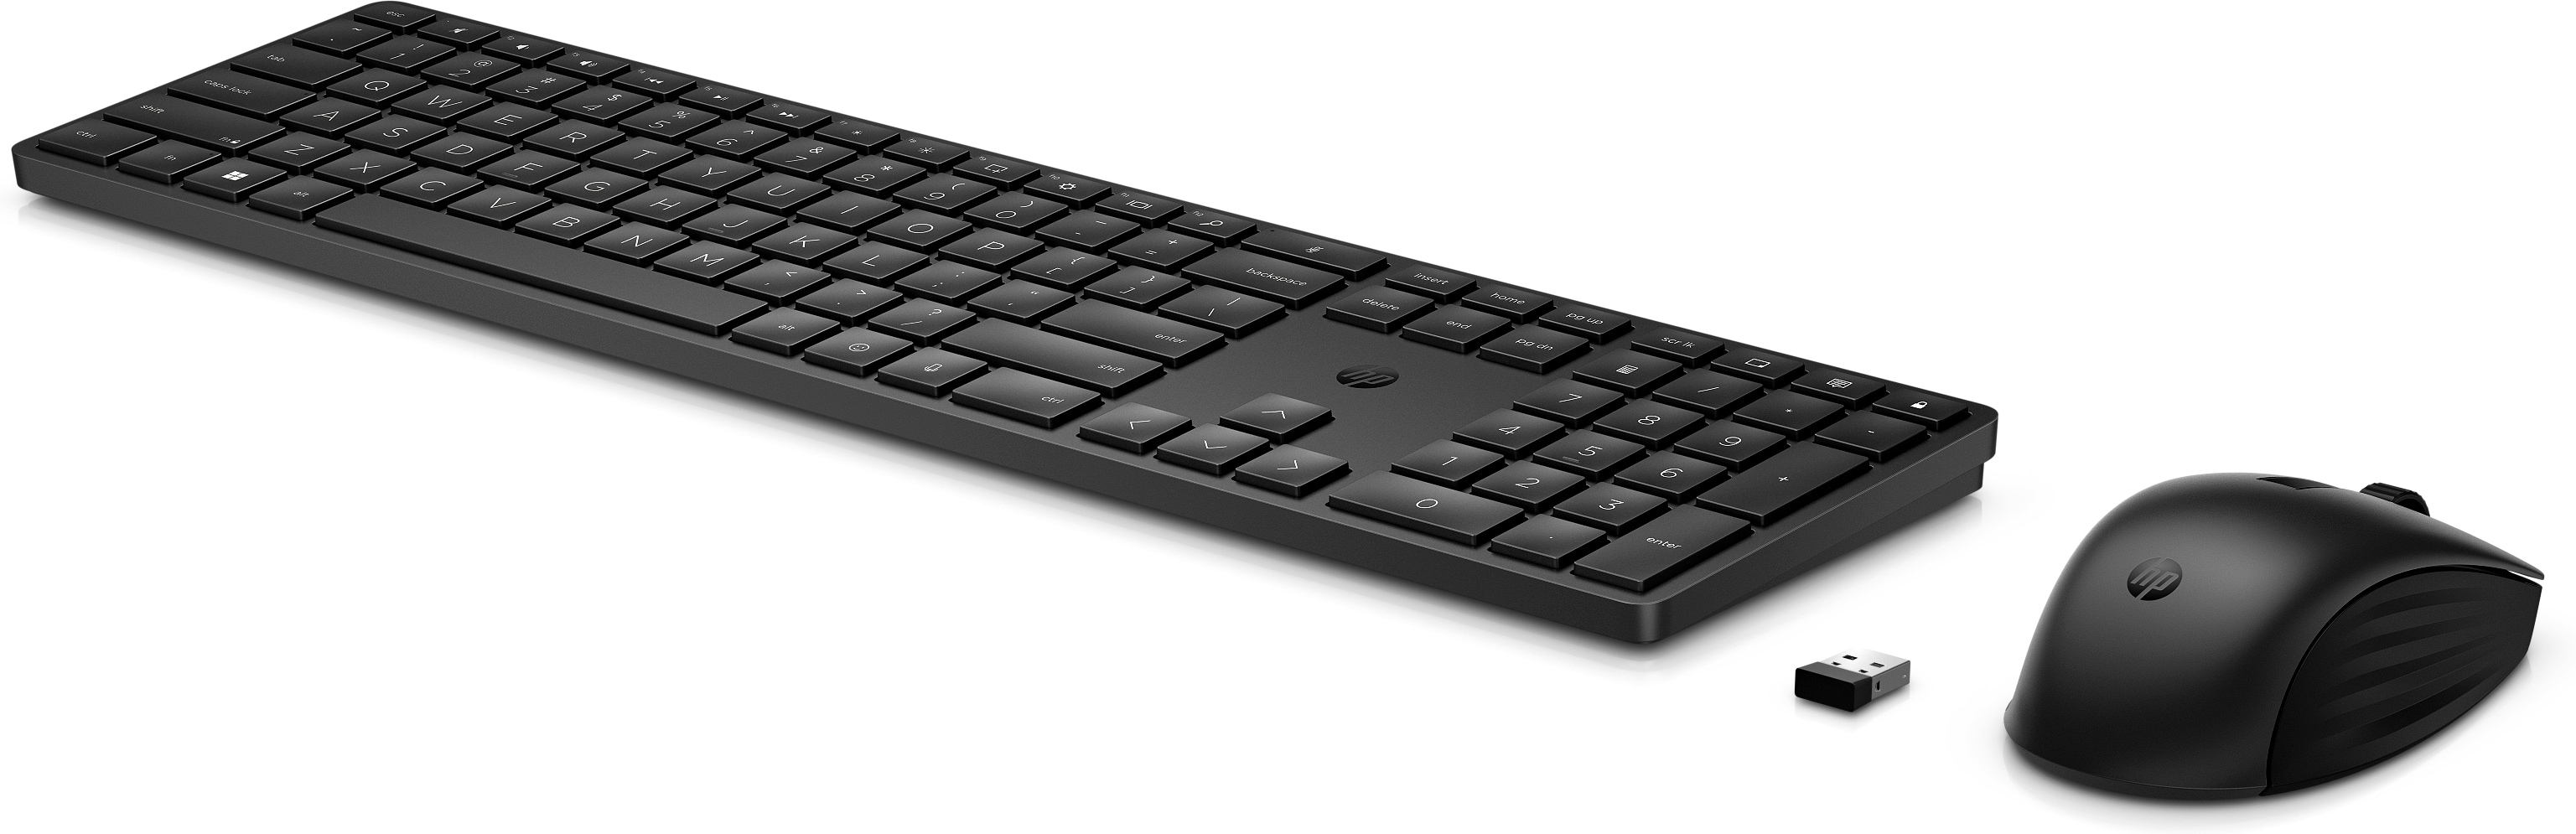 HP 655 Wireless Tastatur und Maus